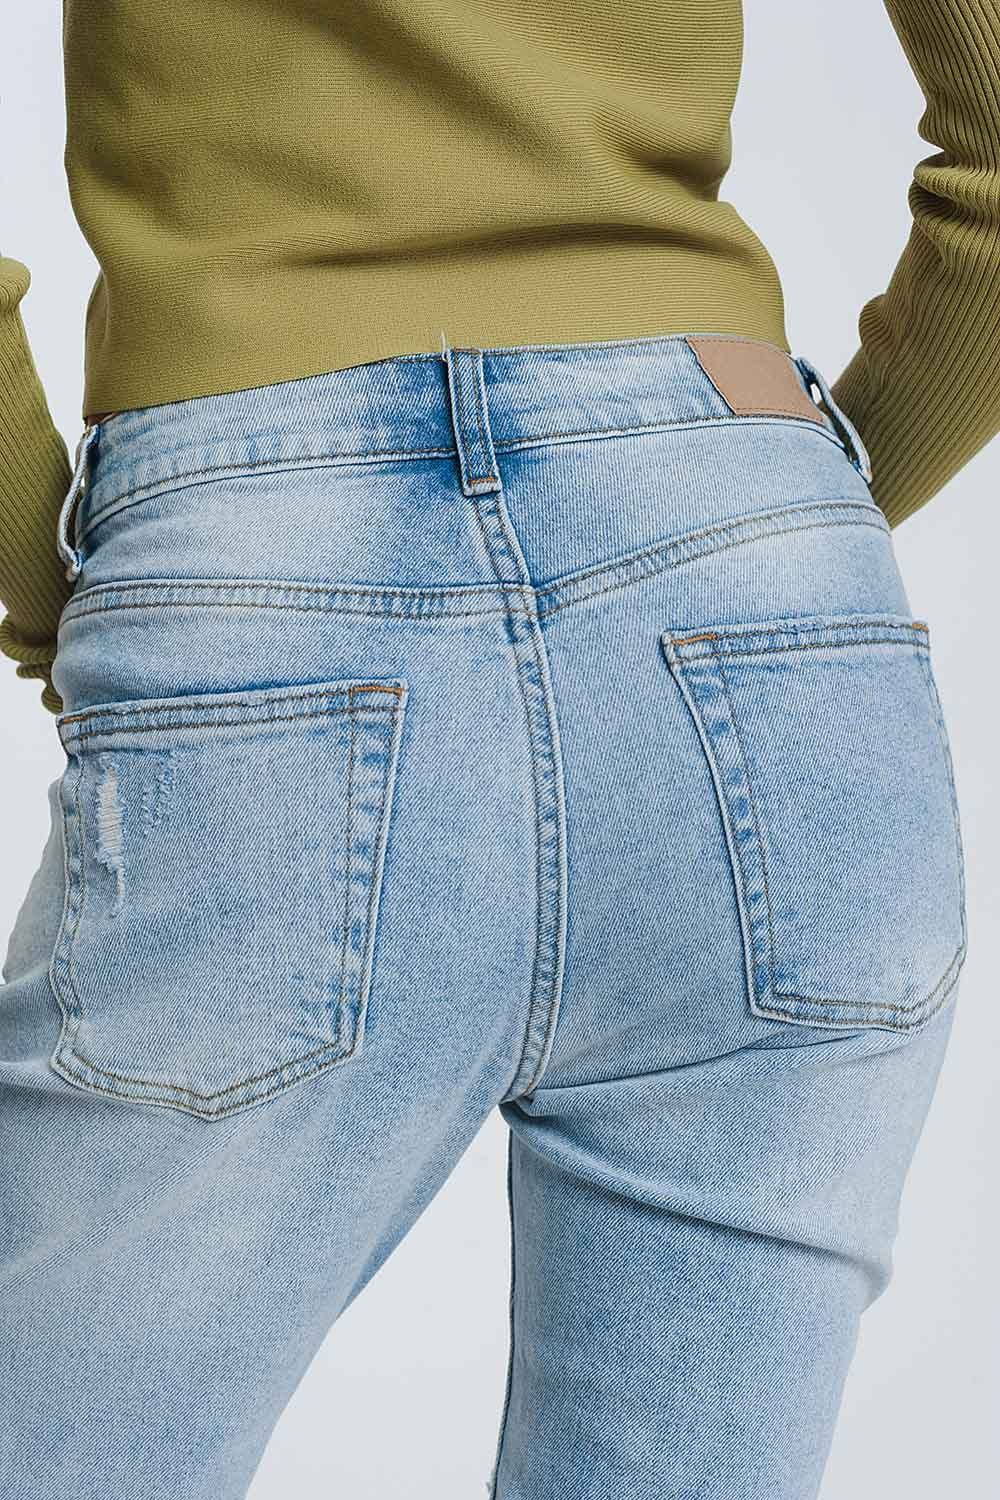 Ripped boyfriend jeans in light denimJeans